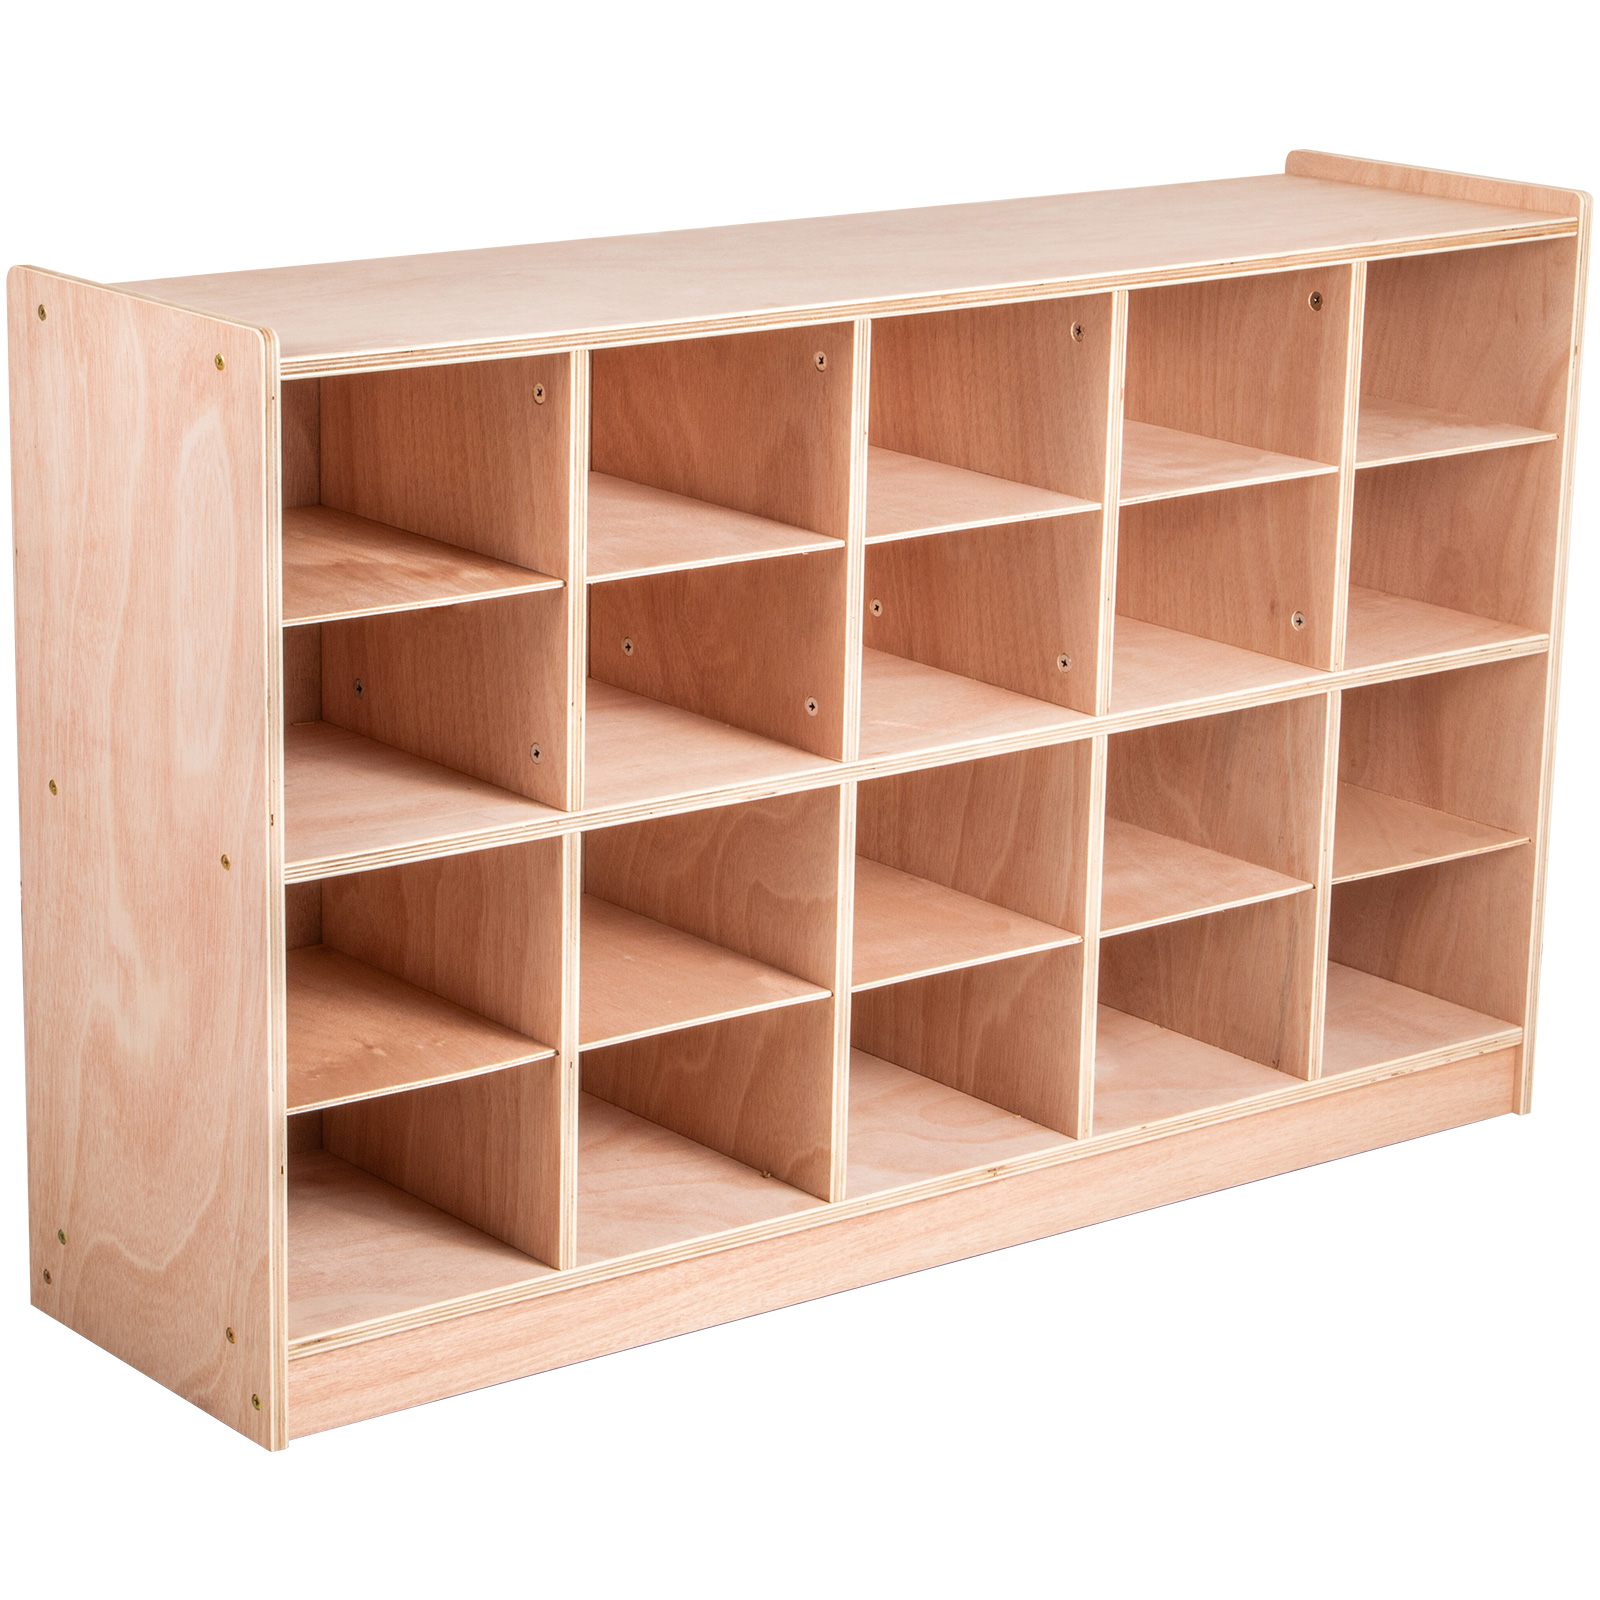 Classroom Storage Cabinet Wooden Cubby Storage 20 Grids Organizer W